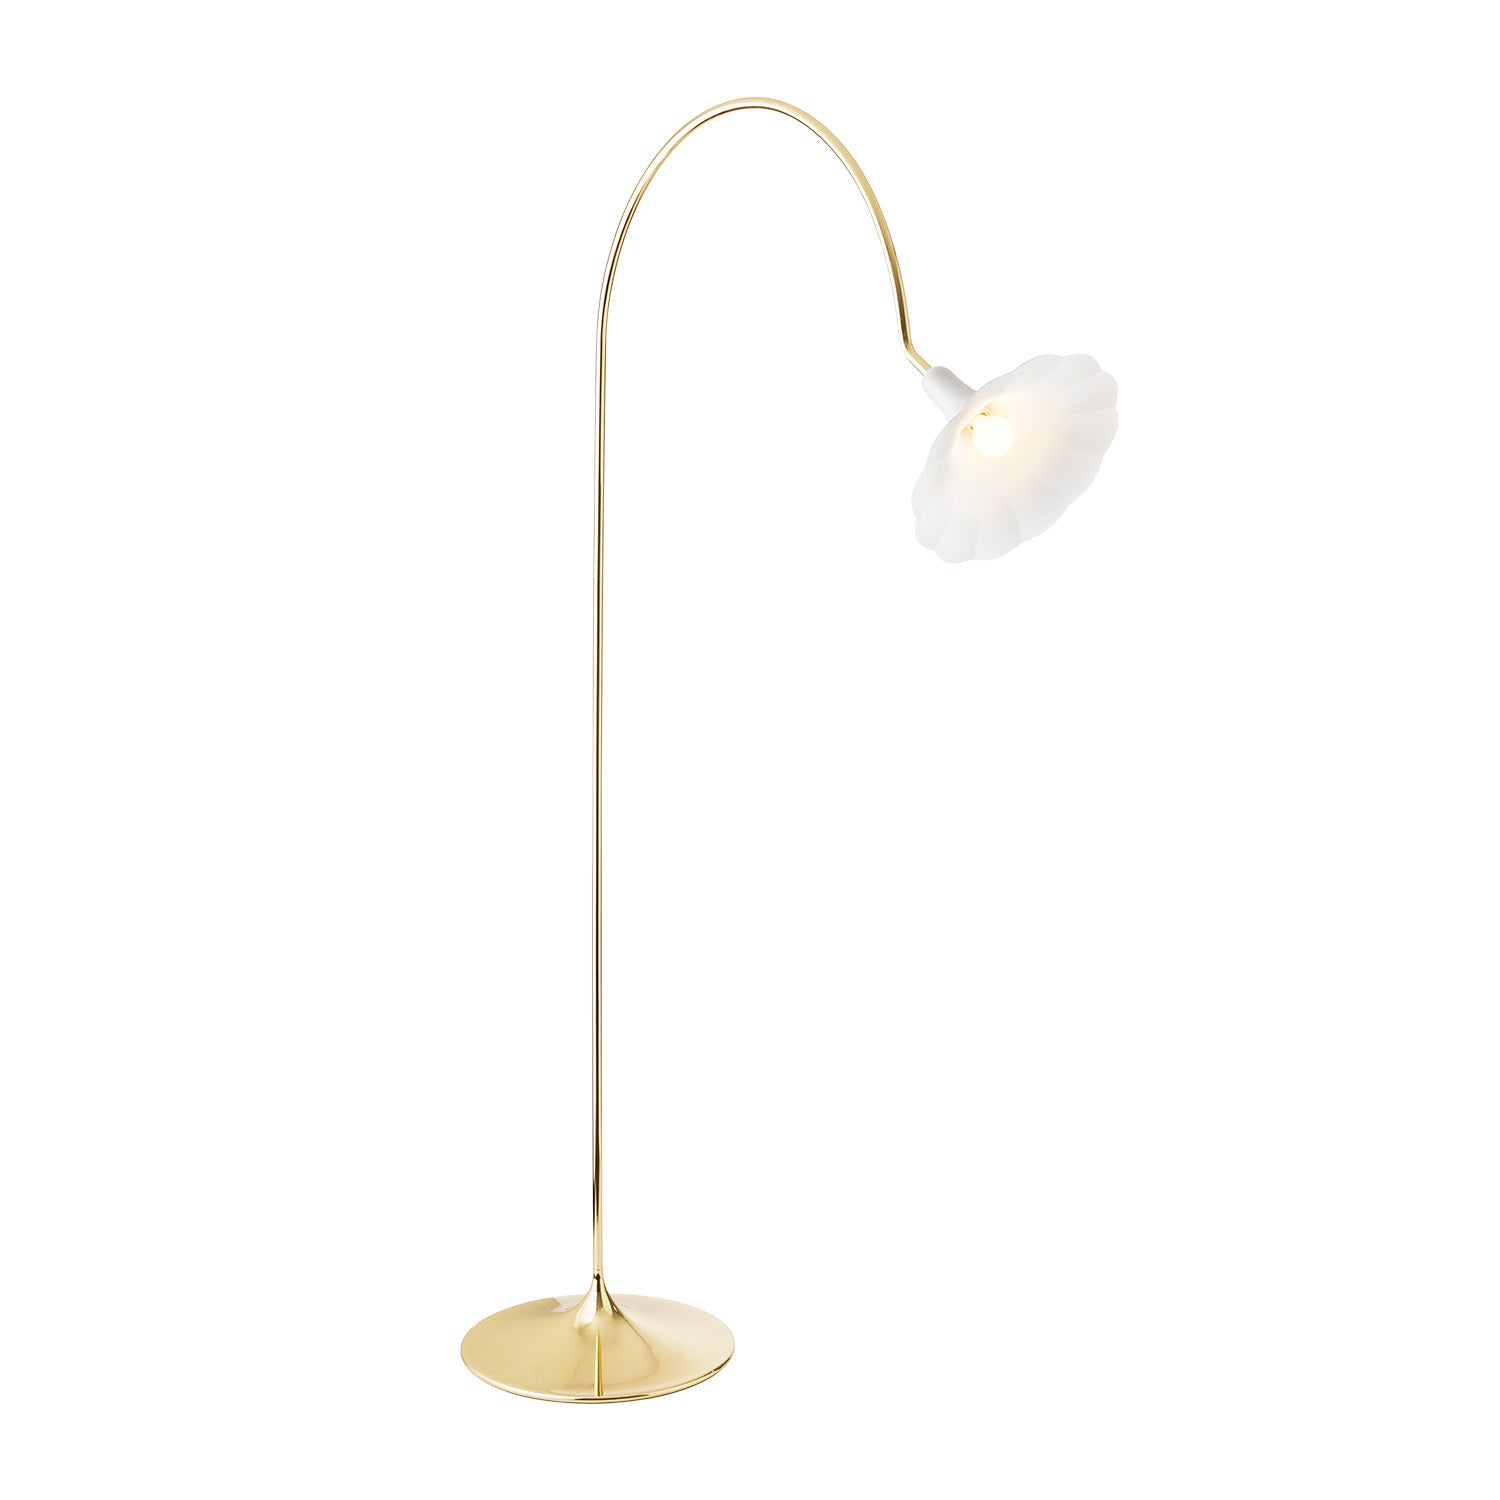 PETALII – Elegante Blumen-Stehlampe in Weiß und poliertem Gold